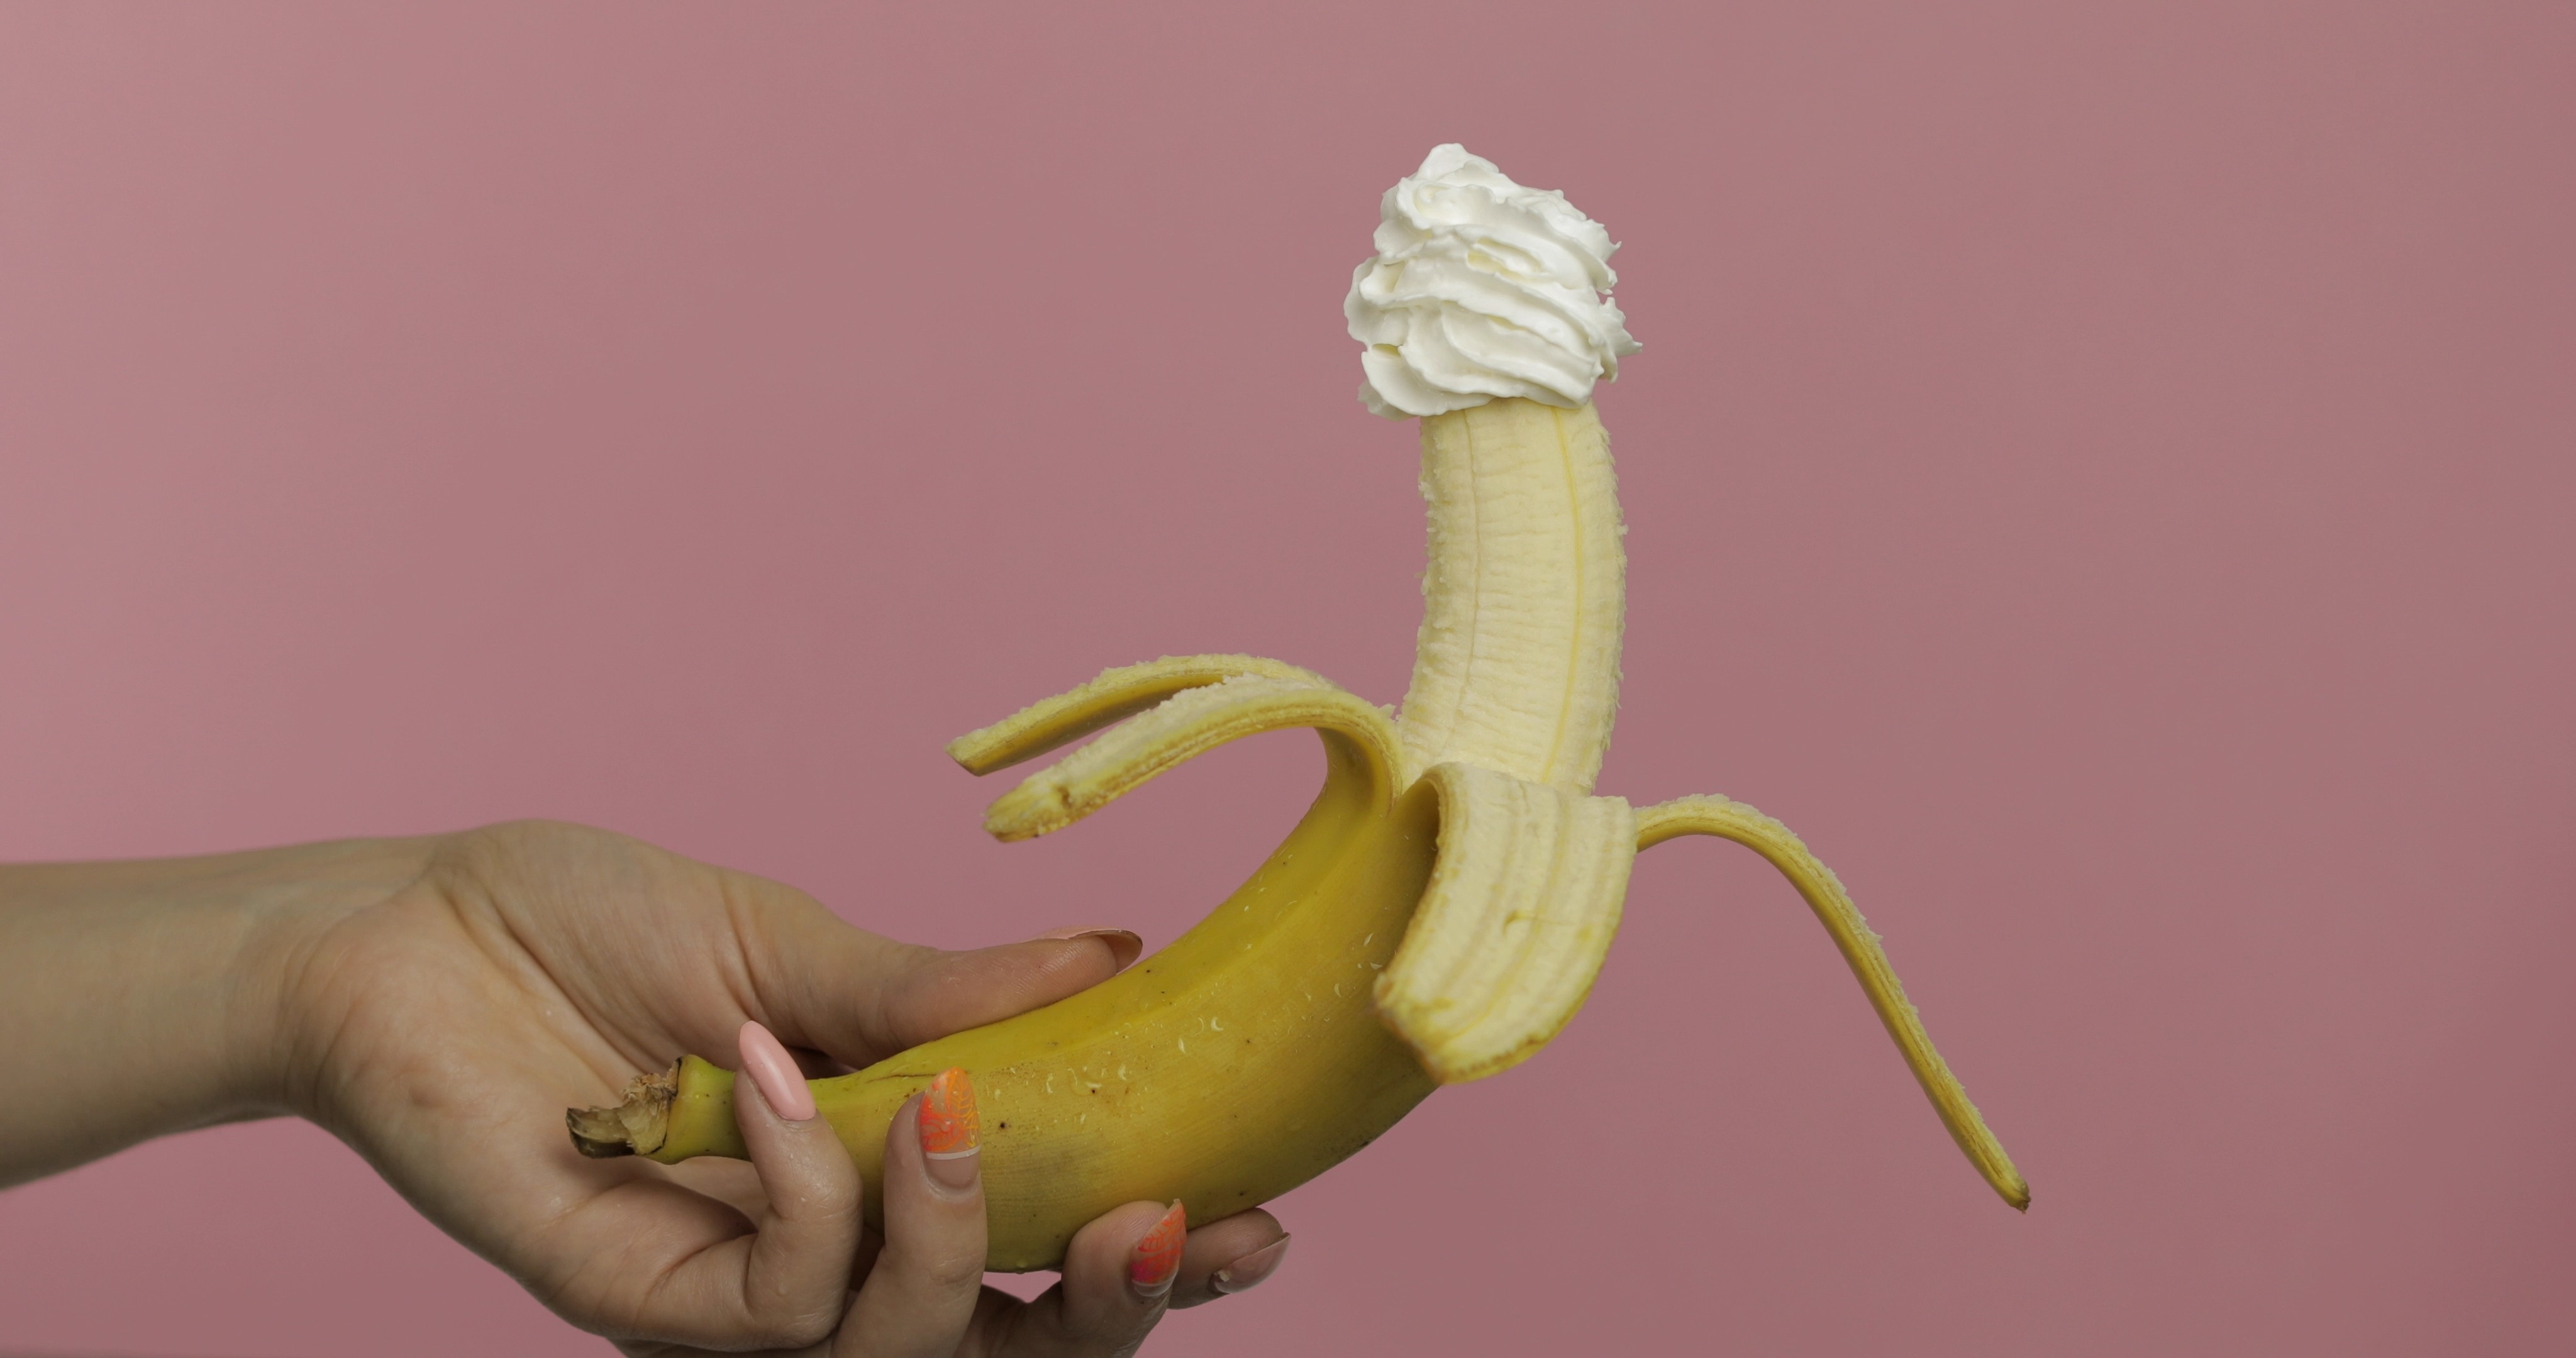 Девушка проникает в письку бананом